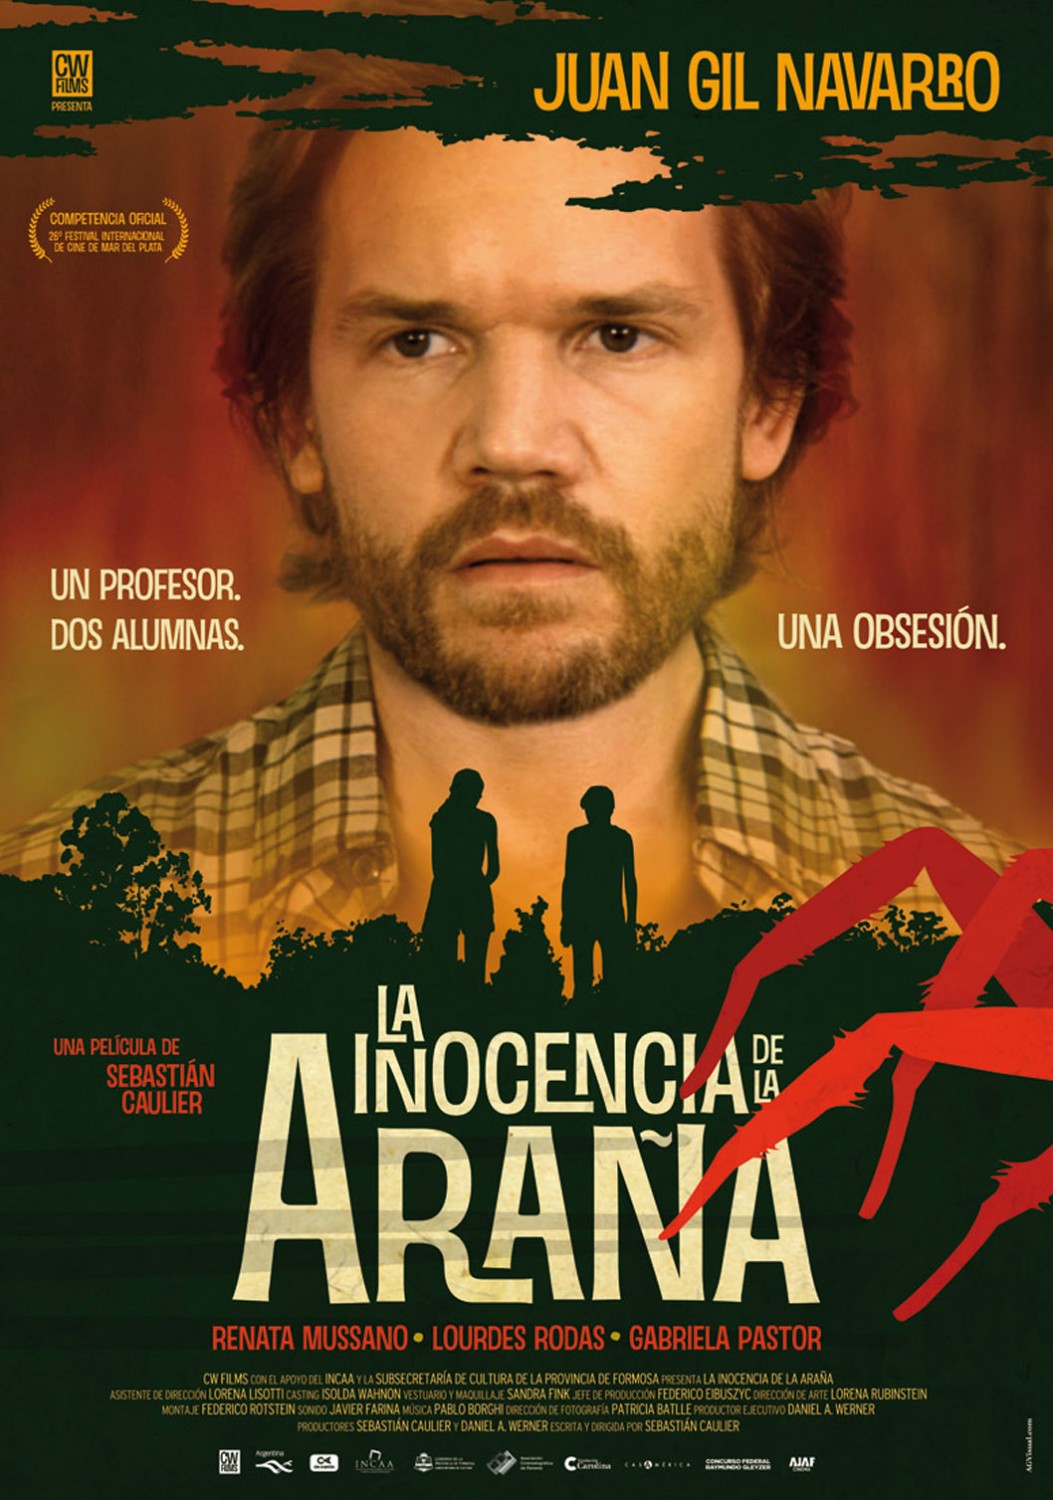 Extra Large Movie Poster Image for La inocencia de la araña (#2 of 2)